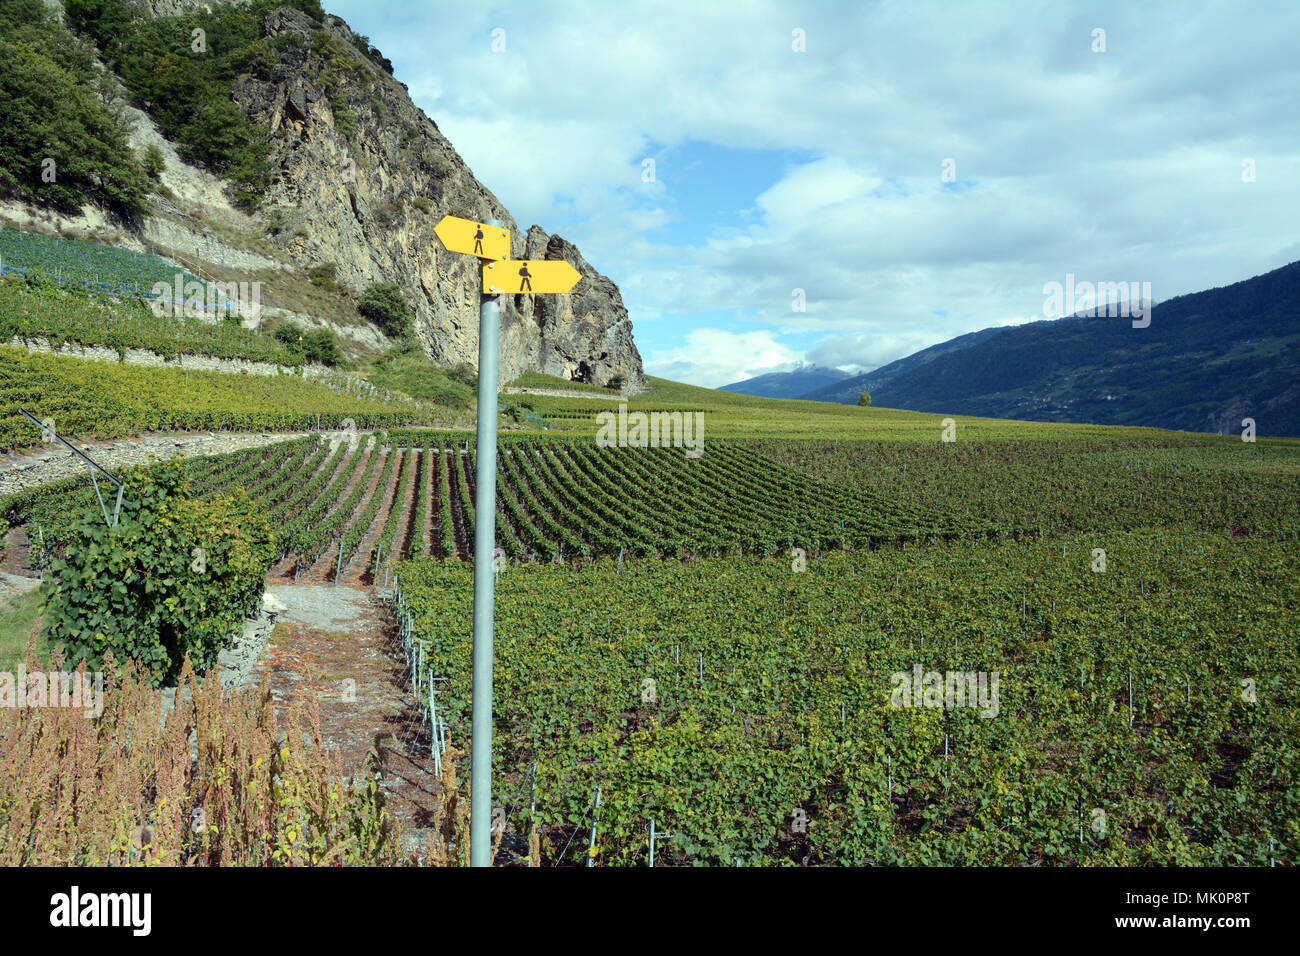 Segnavia accanto a vigneti sullo svizzero del Sentiero del Vino nella Valle del Rodano, vicino alla città di Leytron, nel cantone del Vallese, Svizzera. Foto Stock